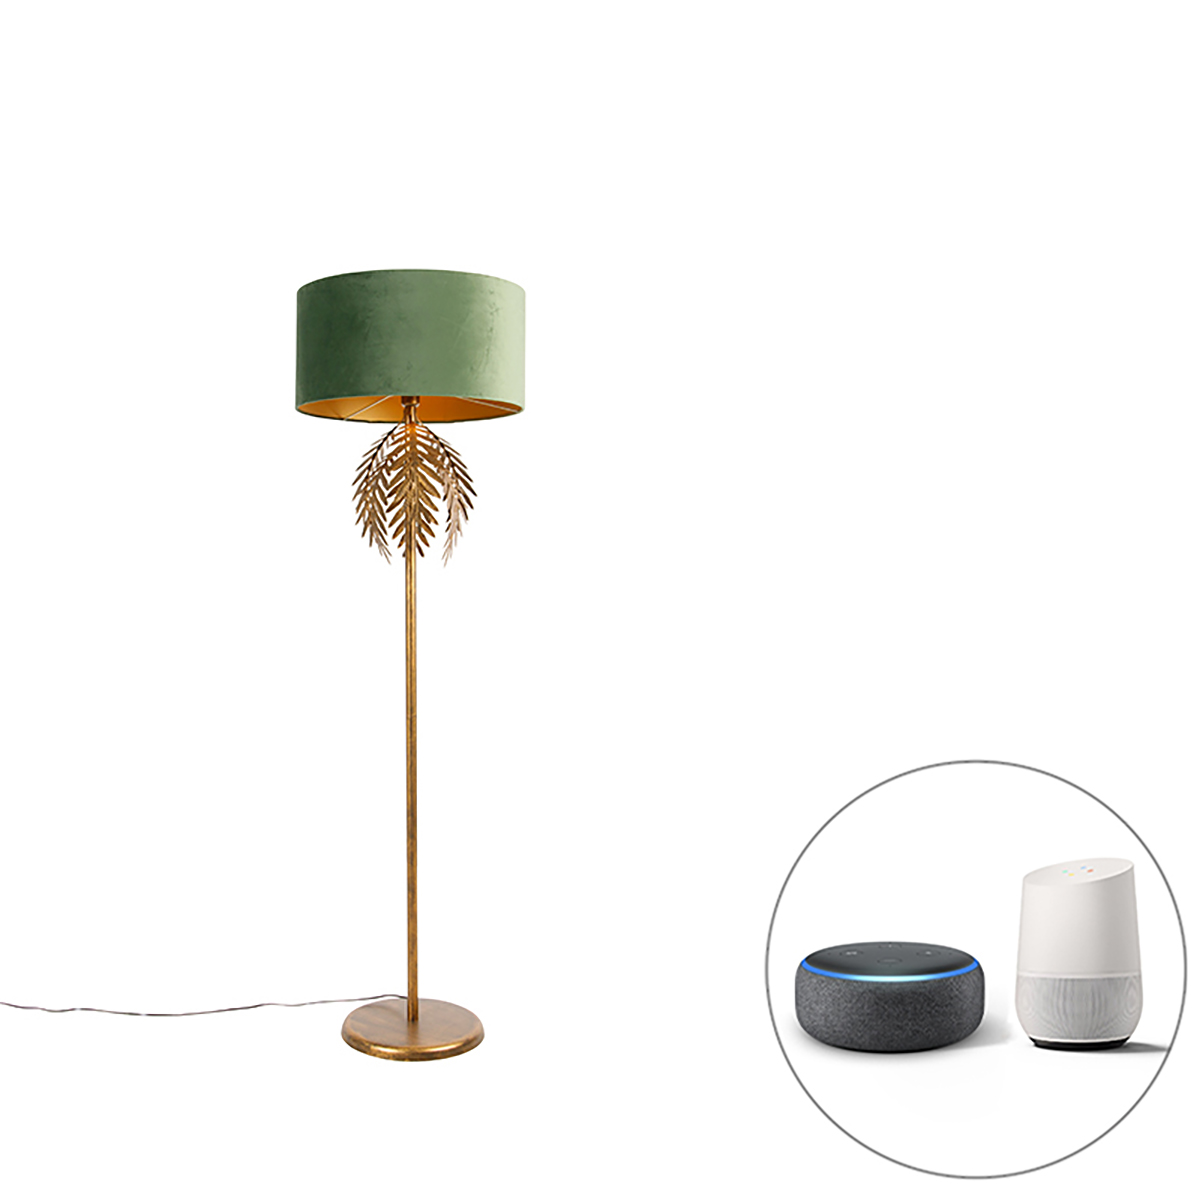 Intelligens arany állólámpa zöld árnyalattal, Wifi A60-al - Botanica